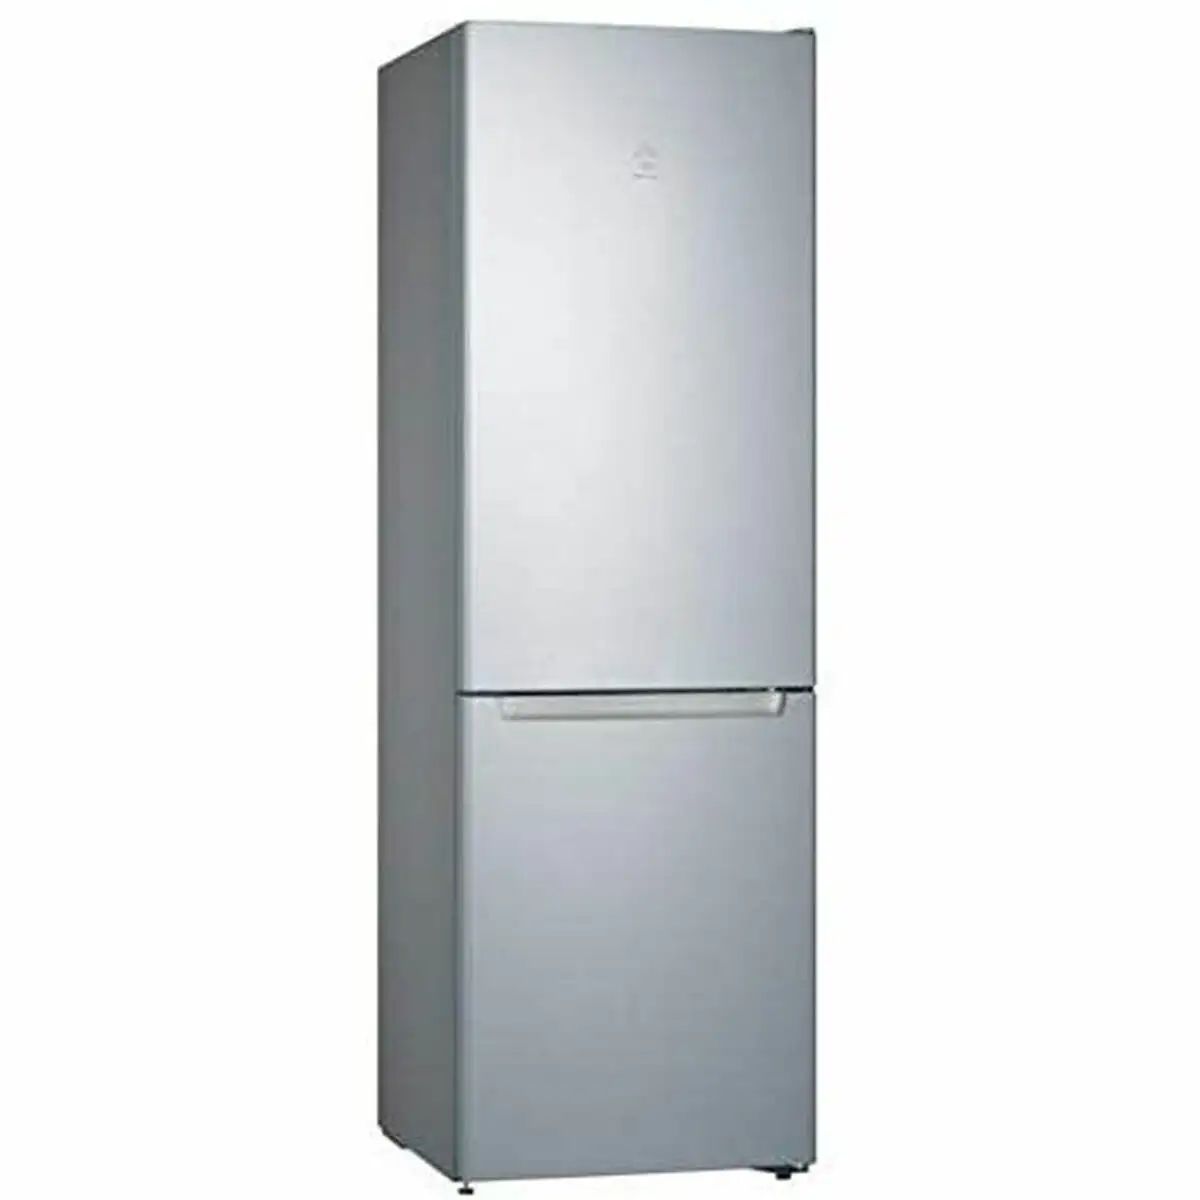 Refrigerateur combine balay 3kfe561mi mat 186 x 60 cm _1973. DIAYTAR SENEGAL - Votre Source d'Inspiration Shopping. Parcourez nos rayons et trouvez des articles qui vous inspirent, que ce soit pour votre style, votre maison ou votre vie quotidienne.